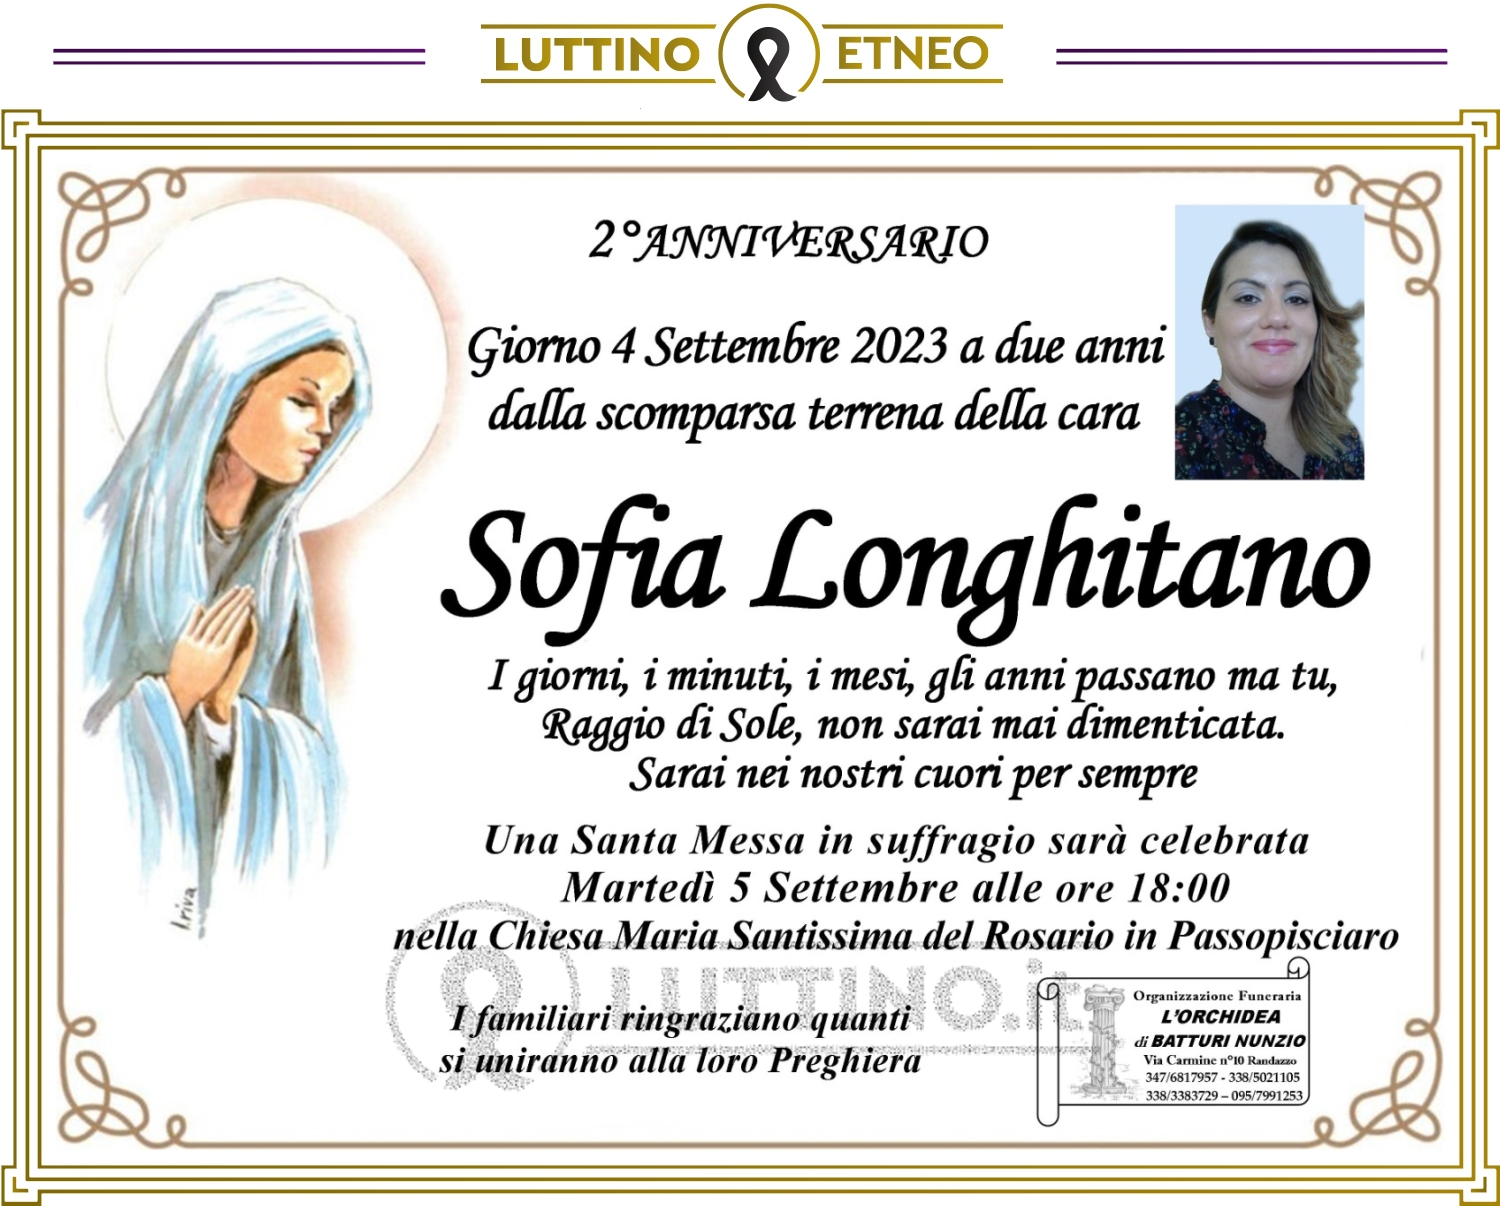 Sofia Longhitano